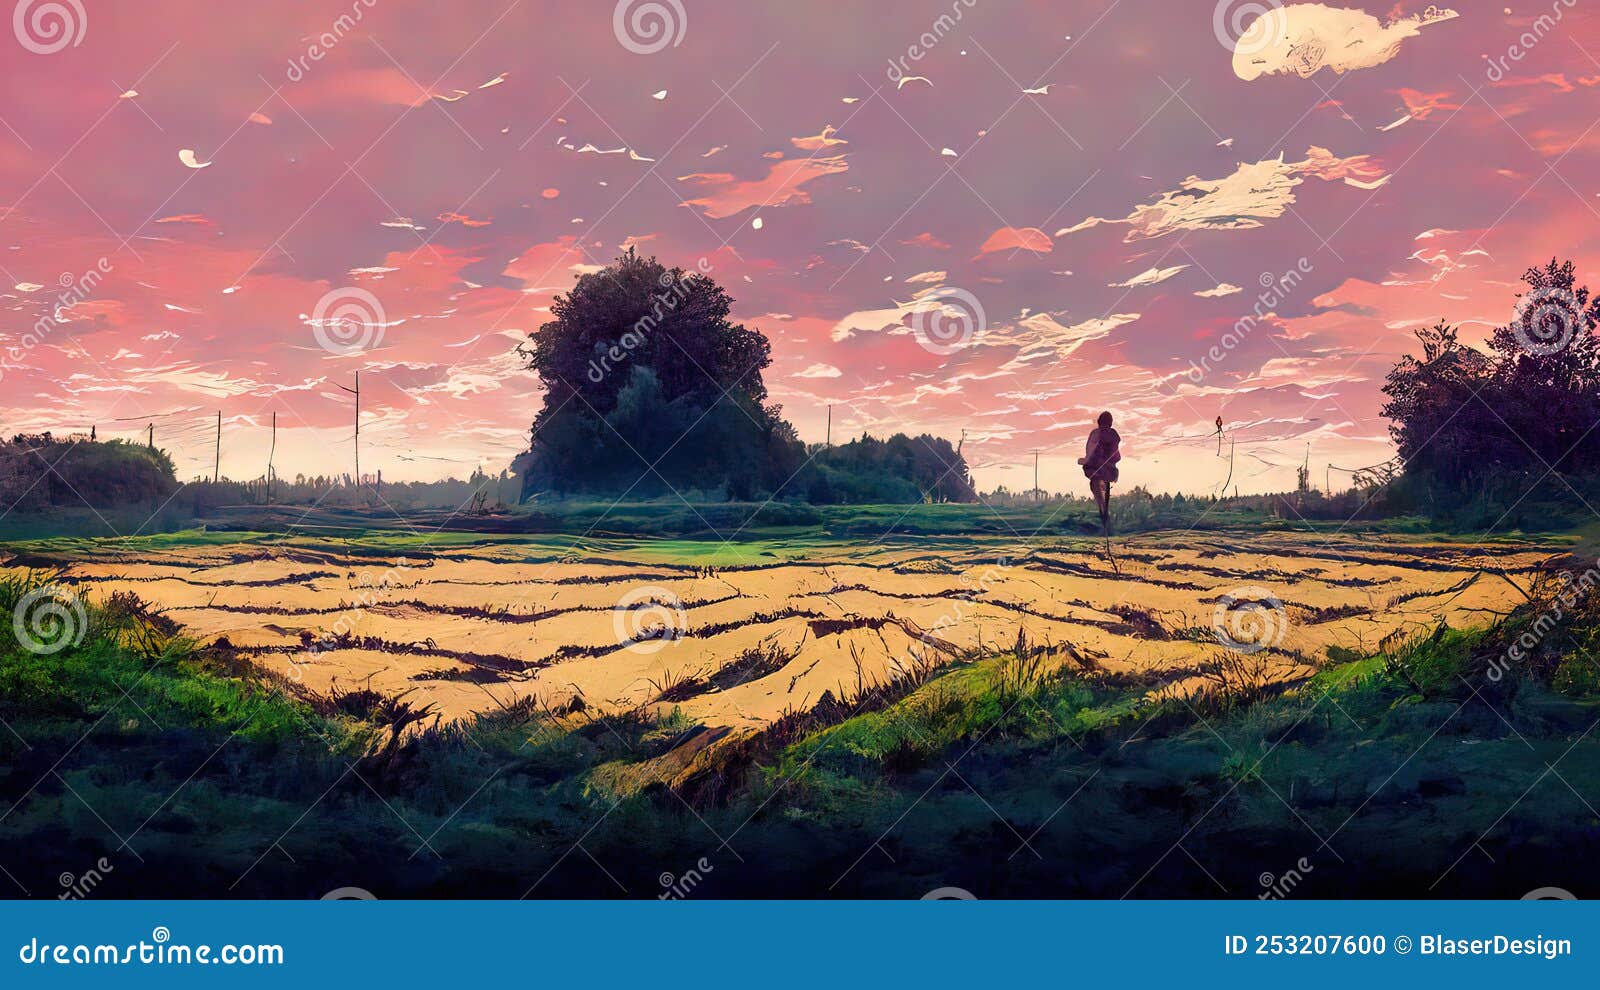 Wallpaper : dusk, anime, city, sunset 3840x2160 - batgirl21 - 1913099 - HD  Wallpapers - WallHere